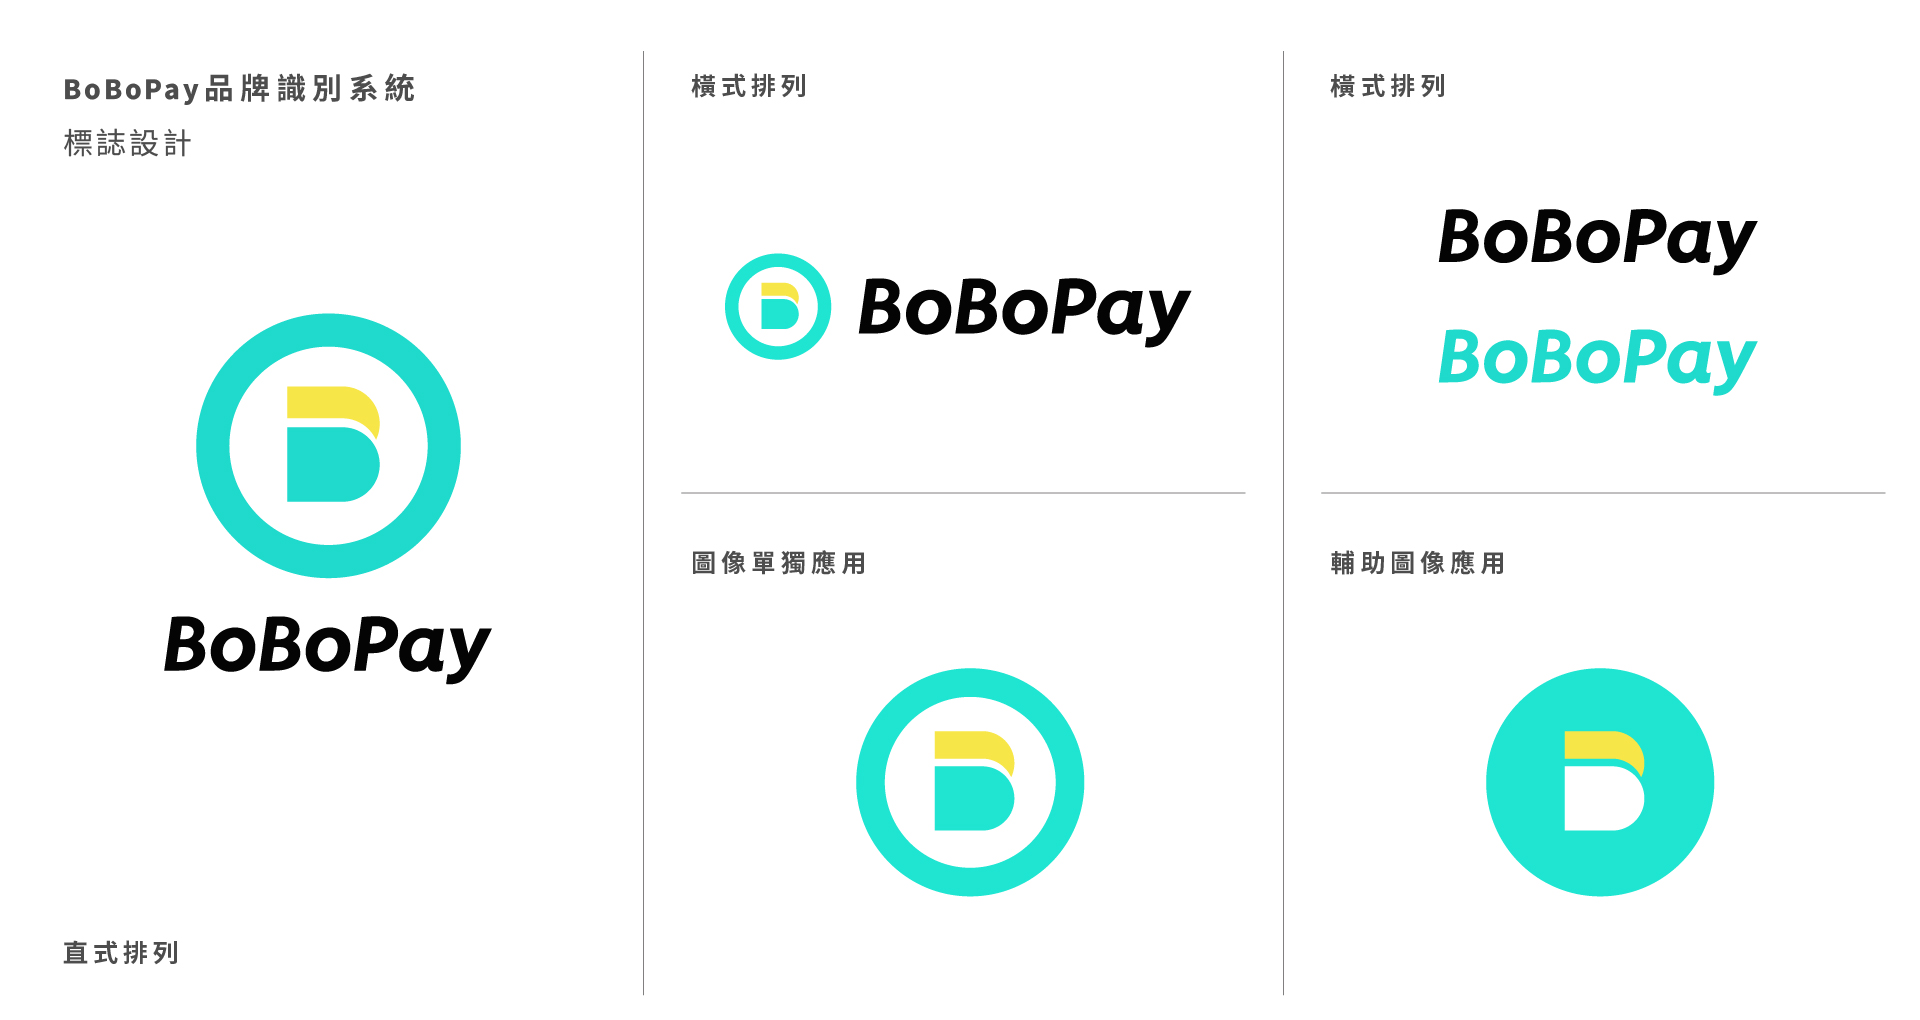 bobopay品牌企業識別系統-BoBoPay 分期，比想像中更簡單！     以『分期』為核心，將品牌字首的B圖像化，由一個單元分裂成兩個單元，直覺式的傳達分期概念。整體識別上以年輕、現代、生活為主要元素。標準字採用斜體，整體線條更為纖瘦活潑，強調服務的快速與輕盈。 | 甘樂文創 | 甘之如飴，樂在其中